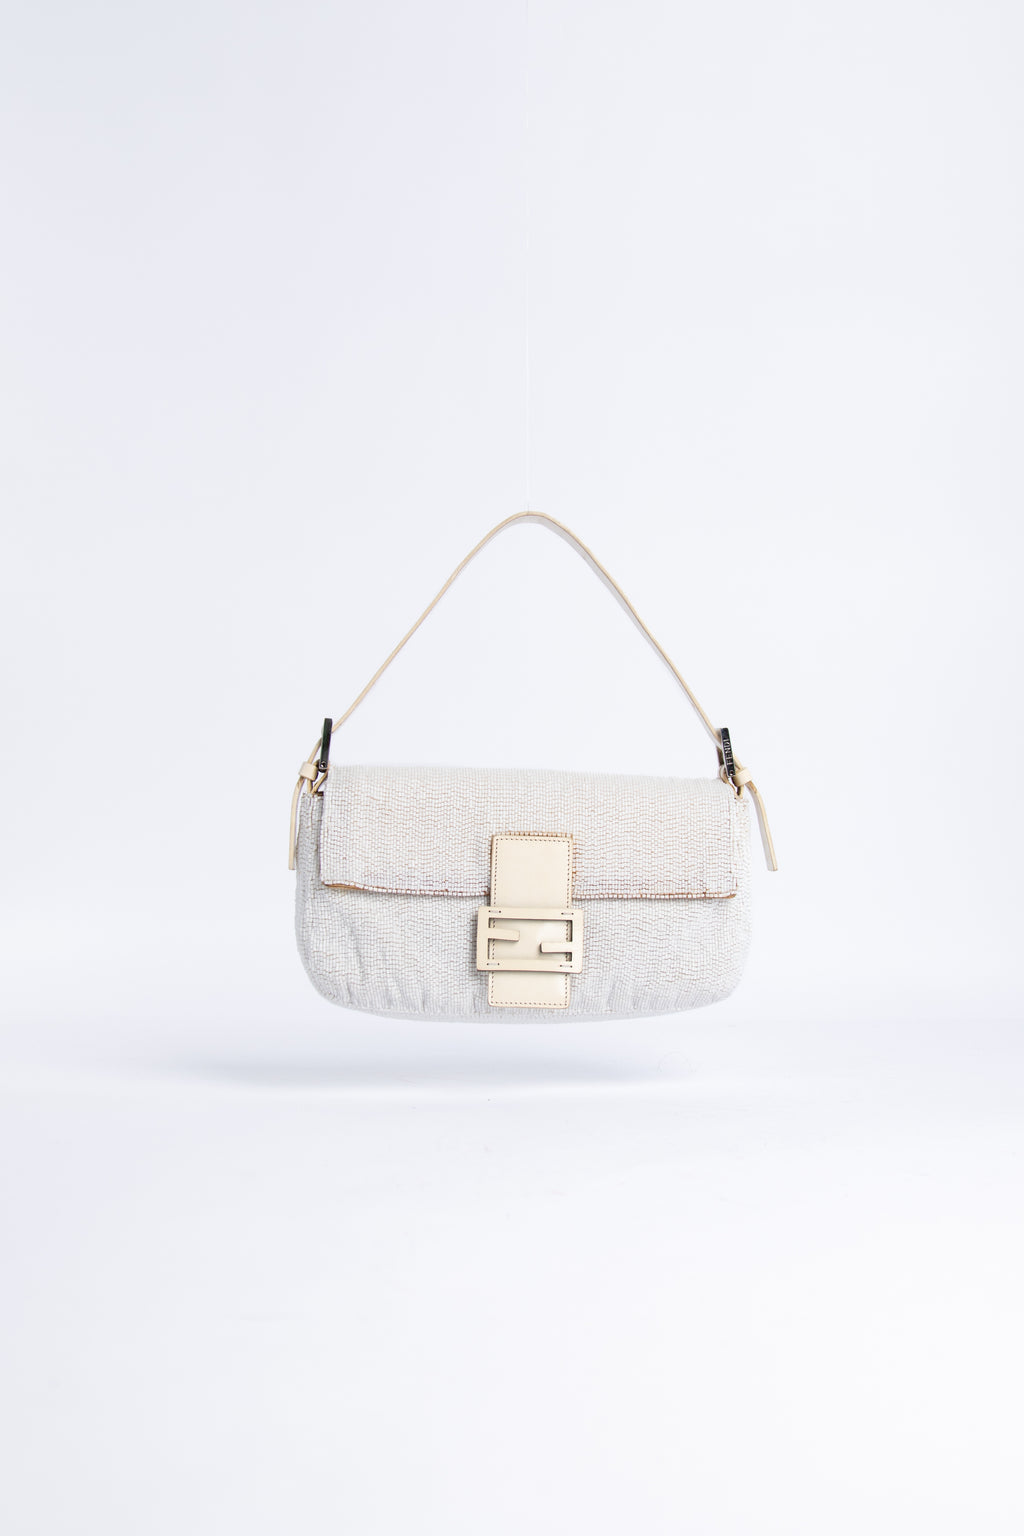 Vintage Louis Vuitton Denim Neo Speedy Bag – Break Archive